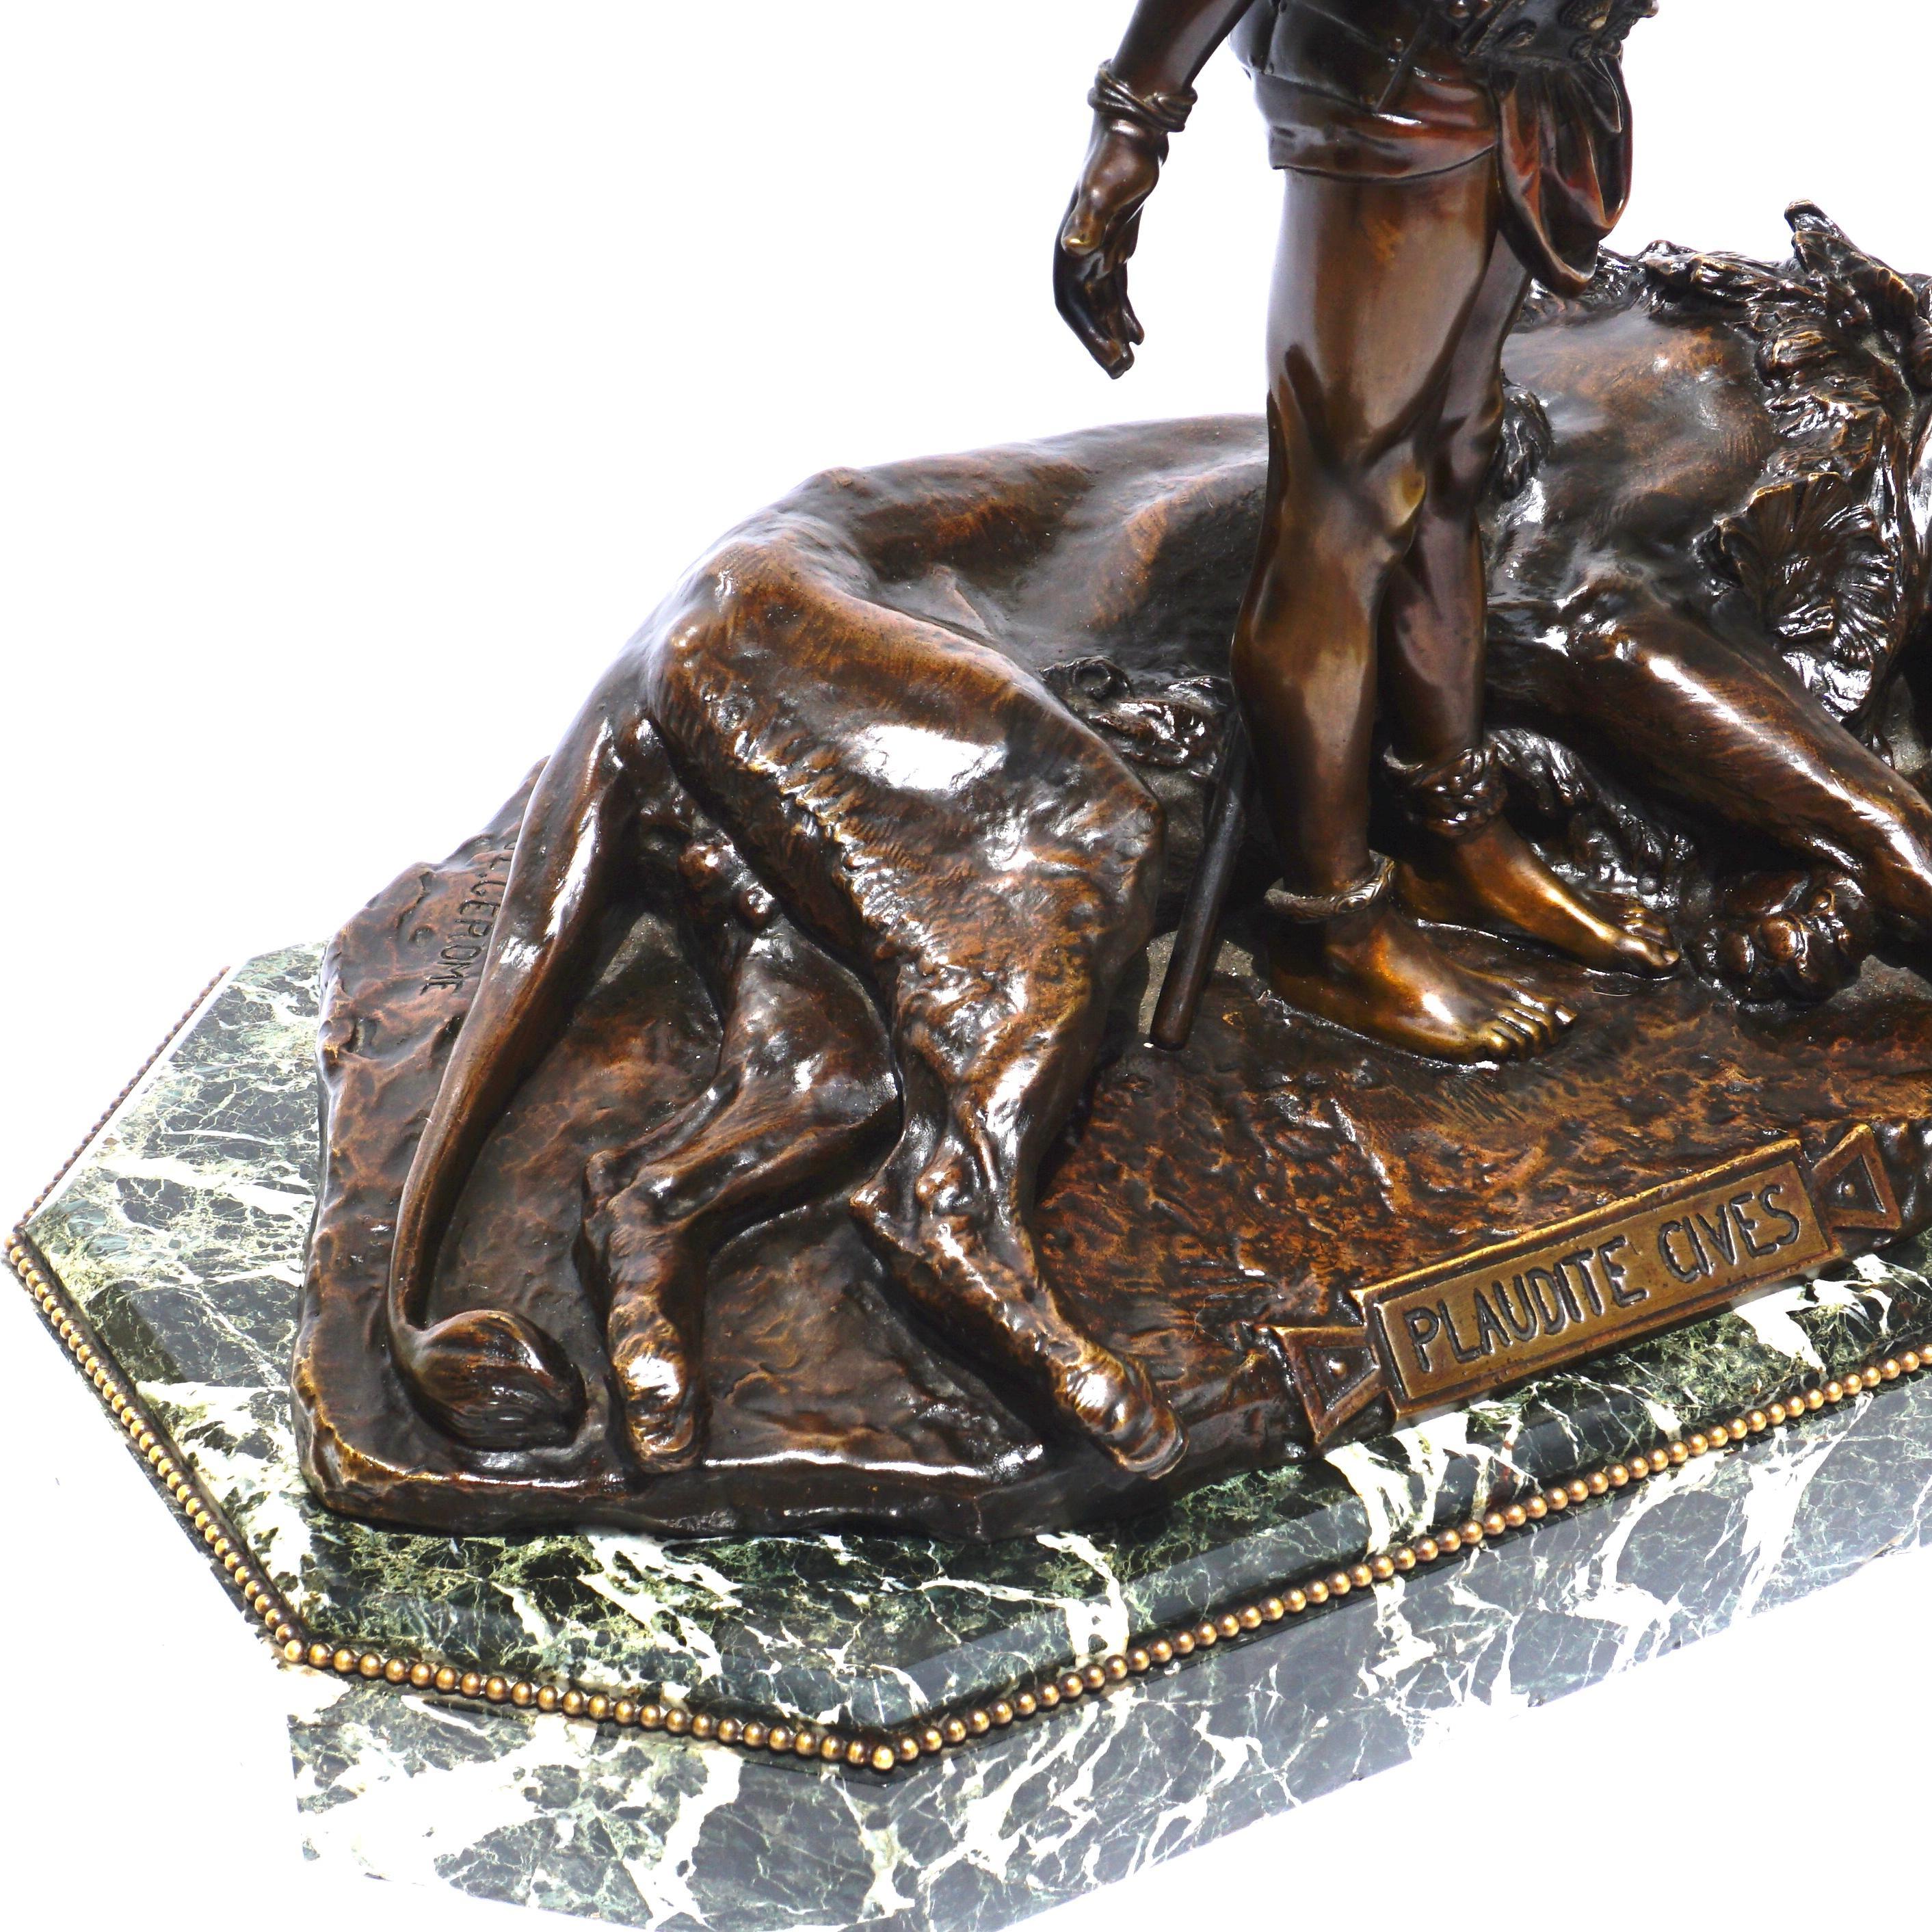 Jean Leon Gerome Plaudite Cives Bronze sculpture For Sale 2